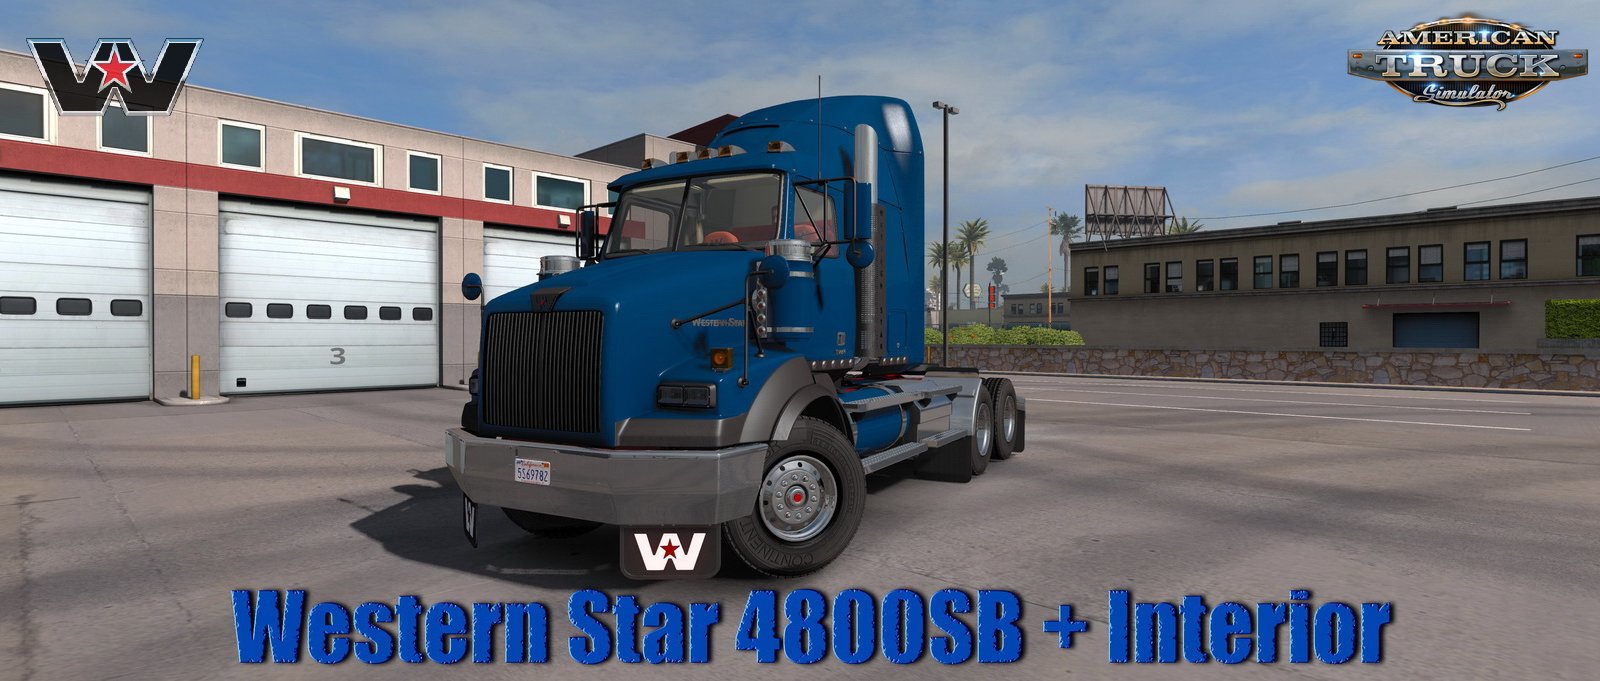 Western Star 4800SB + Interior v1.0 (1.35.x) for ATS